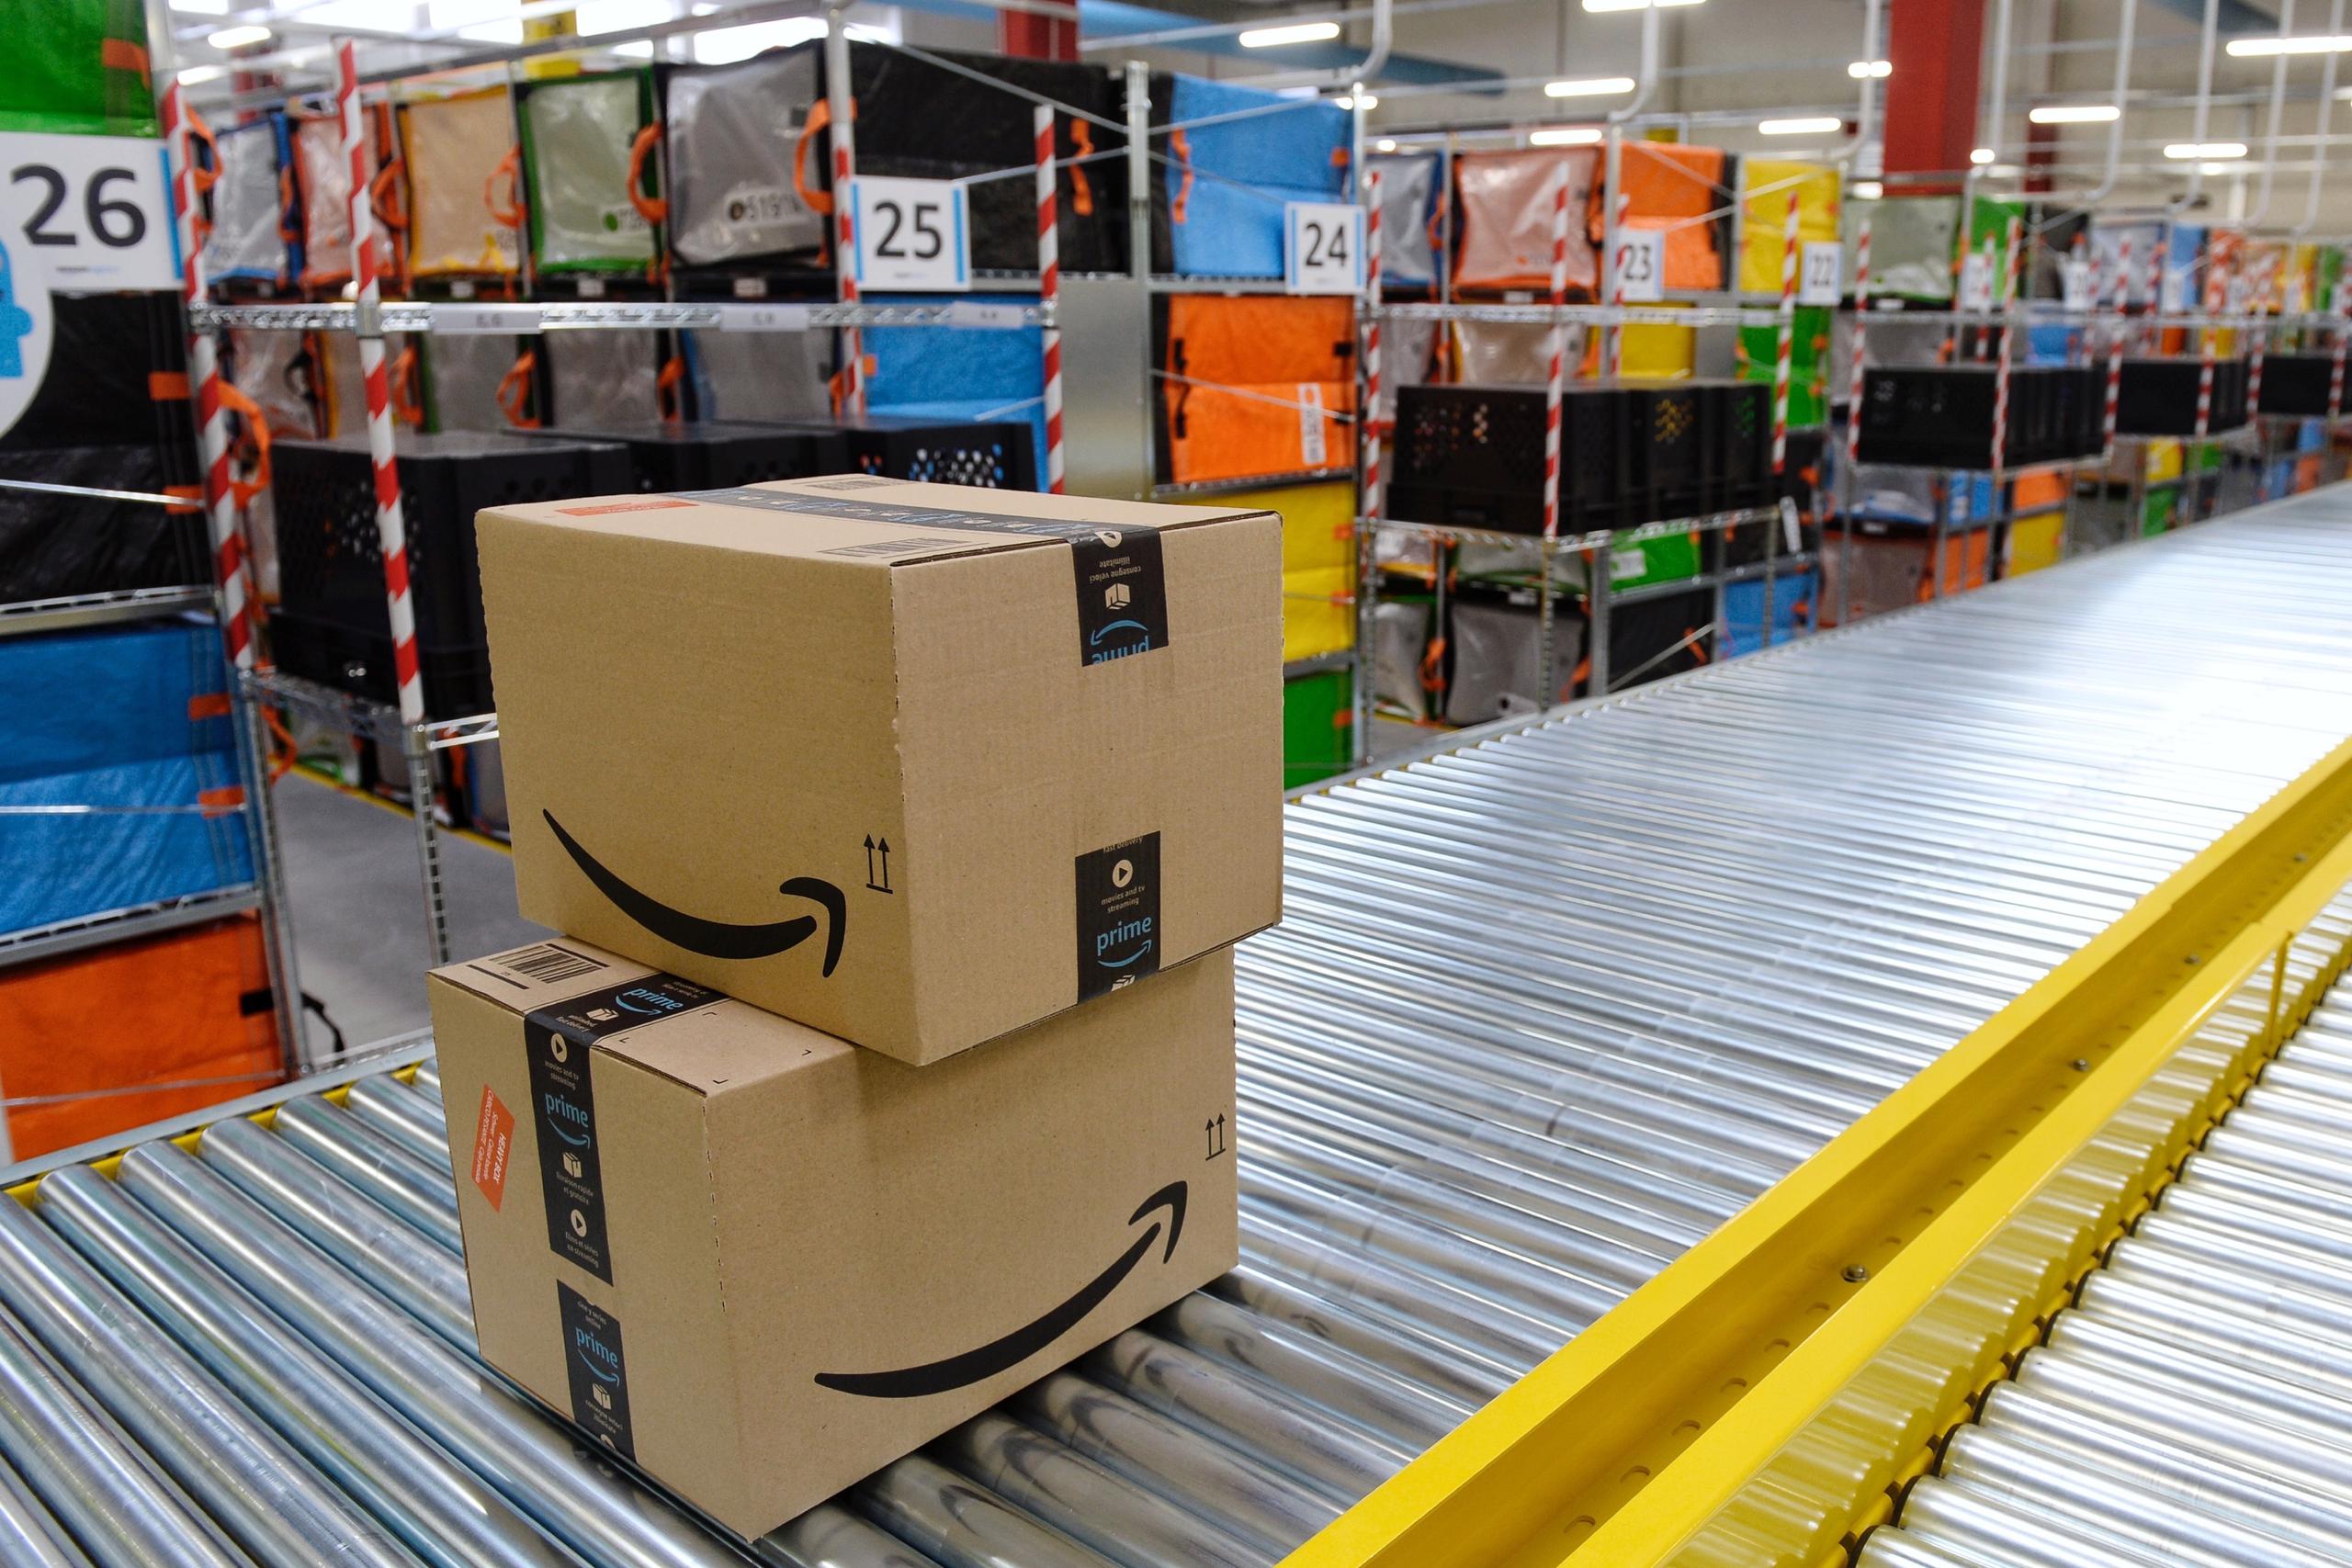 Amazon recuerda que desde siempre ha considerado las reseñas de productos como una de las claves de su negocio, con el objetivo de hacer más fácil a los consumidores decidir qué artículos son los más adecuados para ellos.